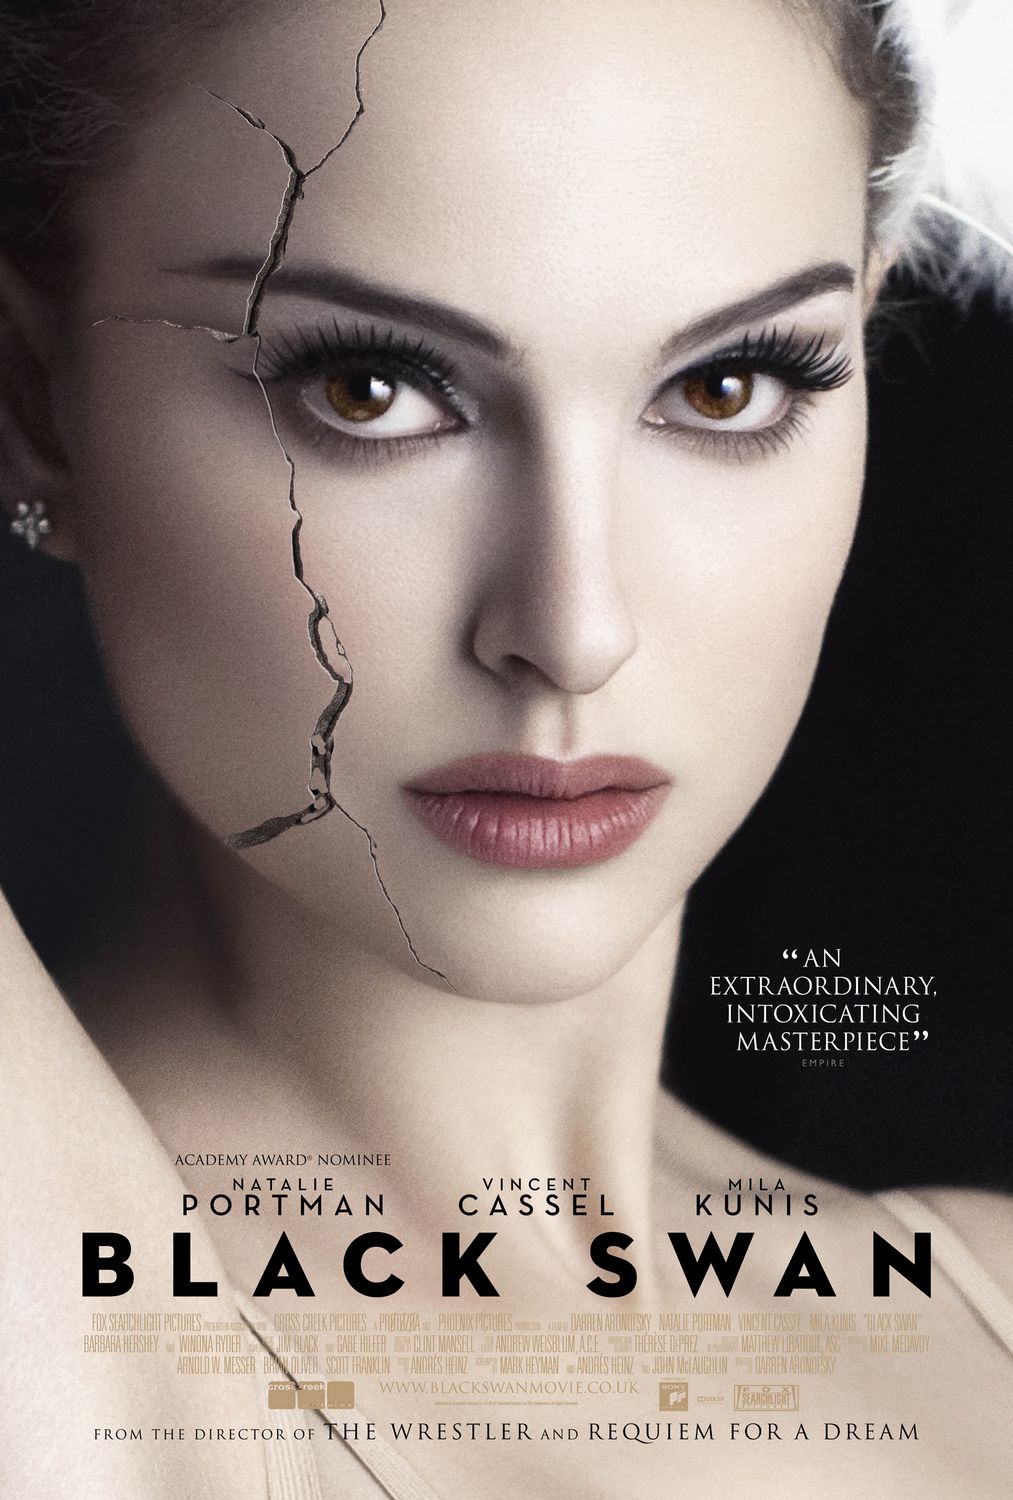 Film Black Swan – Darren Aronofsky